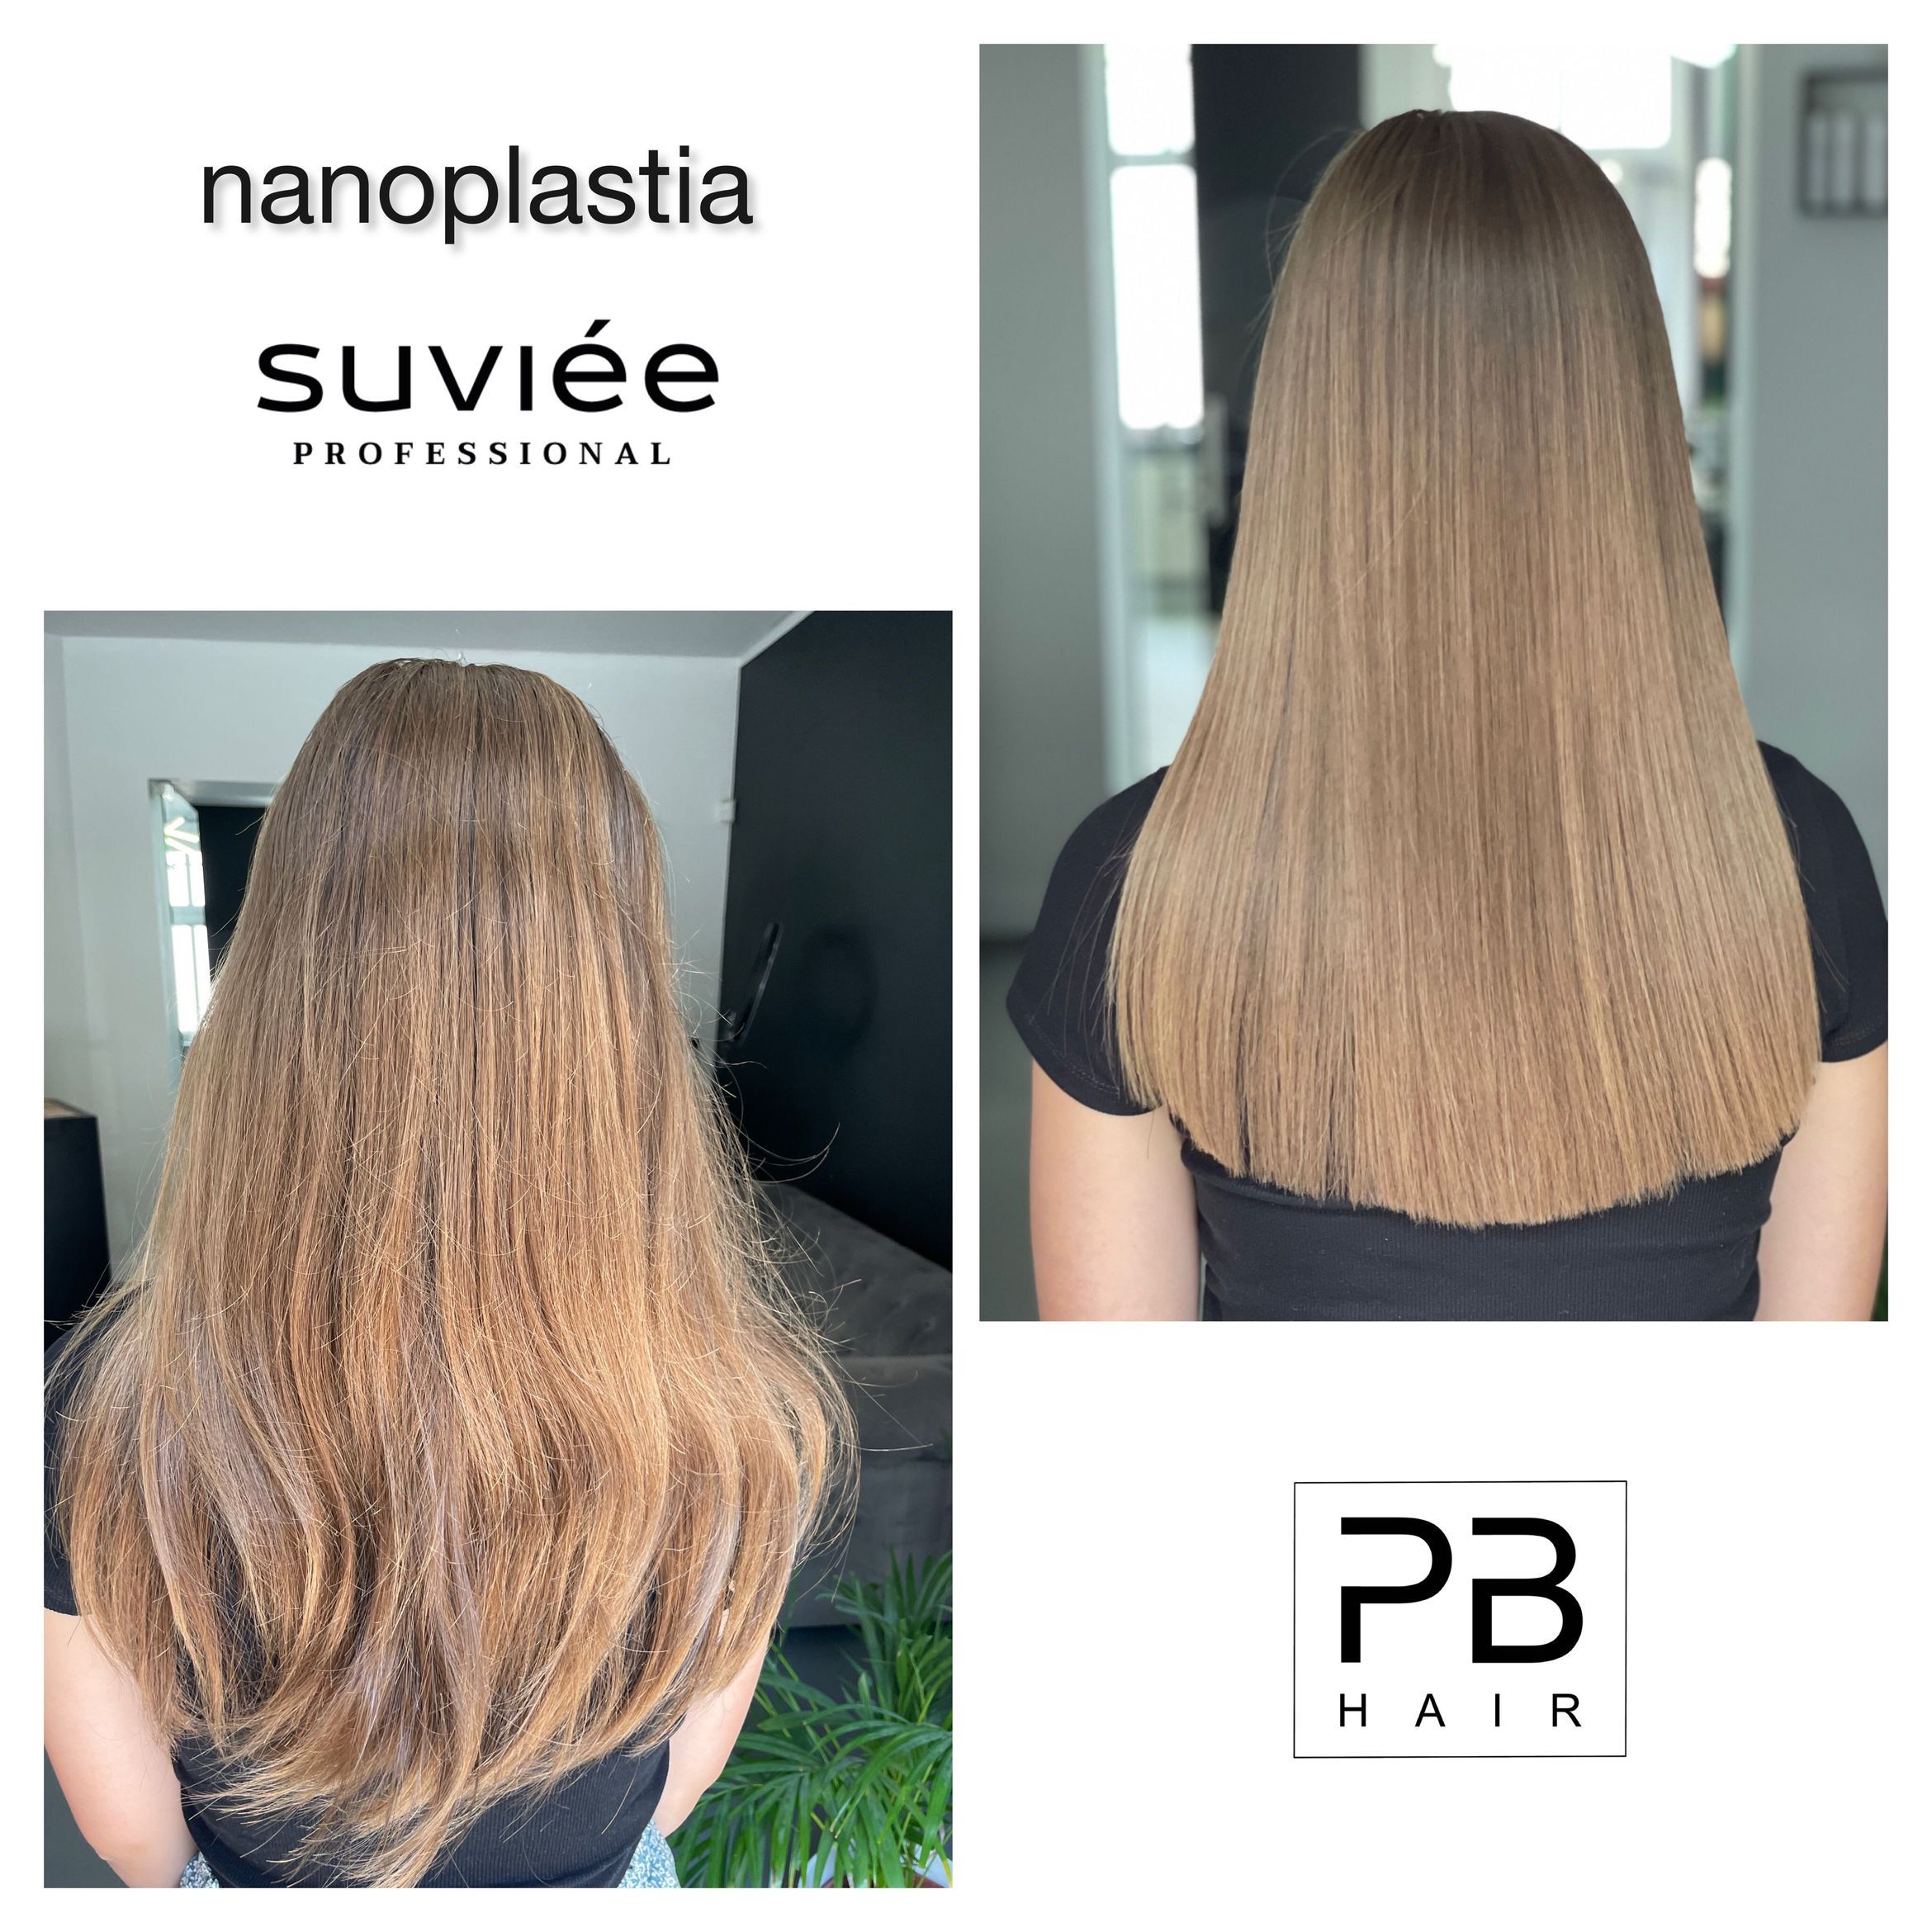 Portfolio usługi nanoplastia / włosy długie